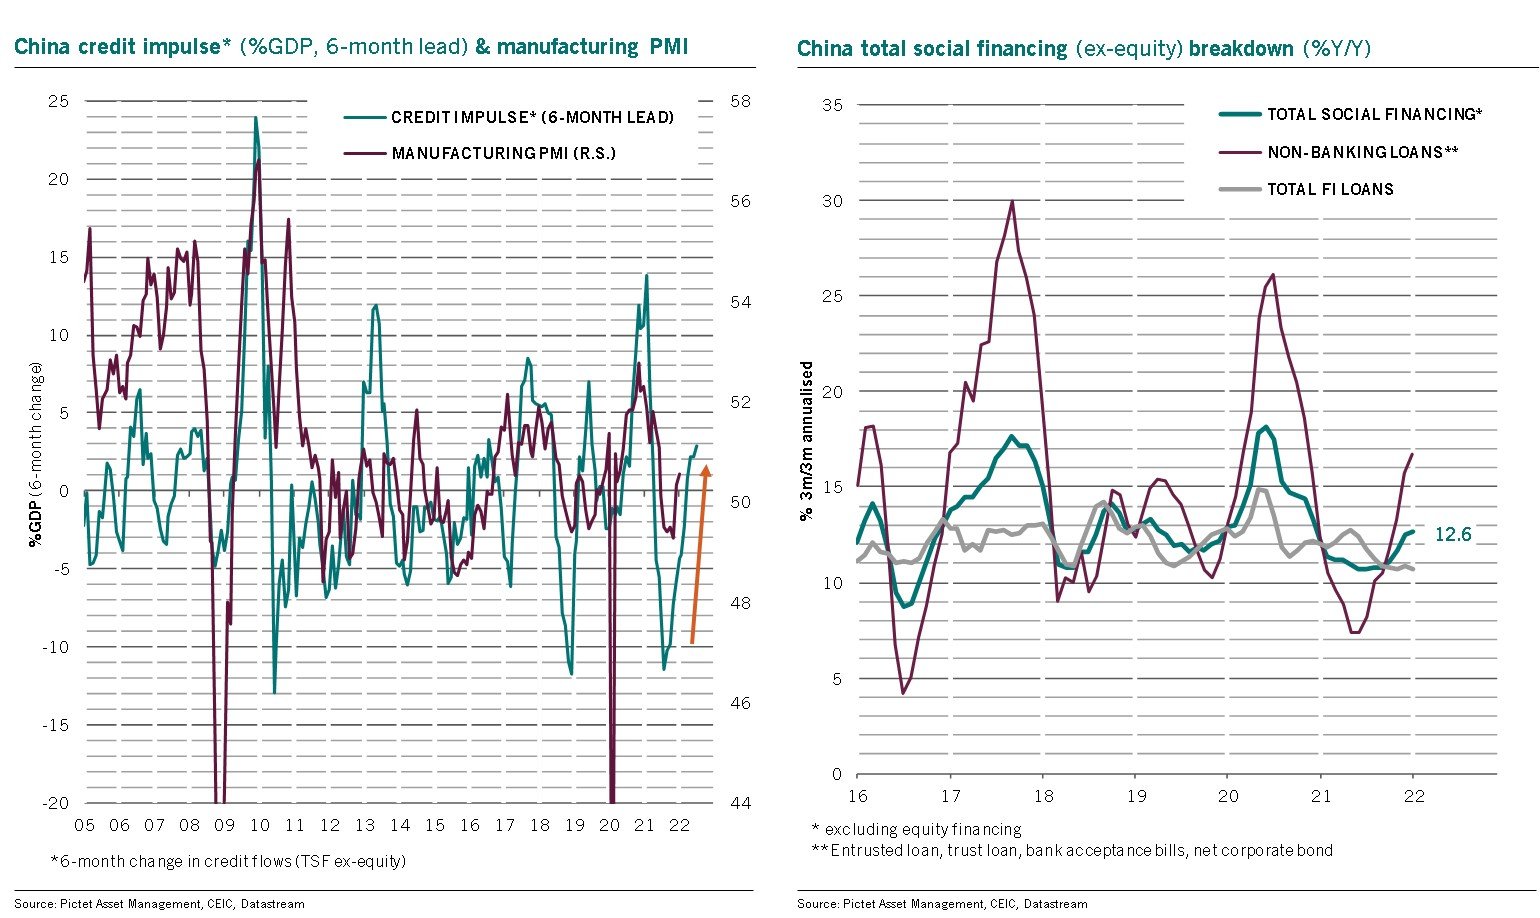 Gráfico 1: Comparativa en la evolución del impulso al crédito y las manufacturas en China, desde 2005. Gráfico 2: Comparativa en la evolución de los distintos tipos de préstamos en China, desde 2016.